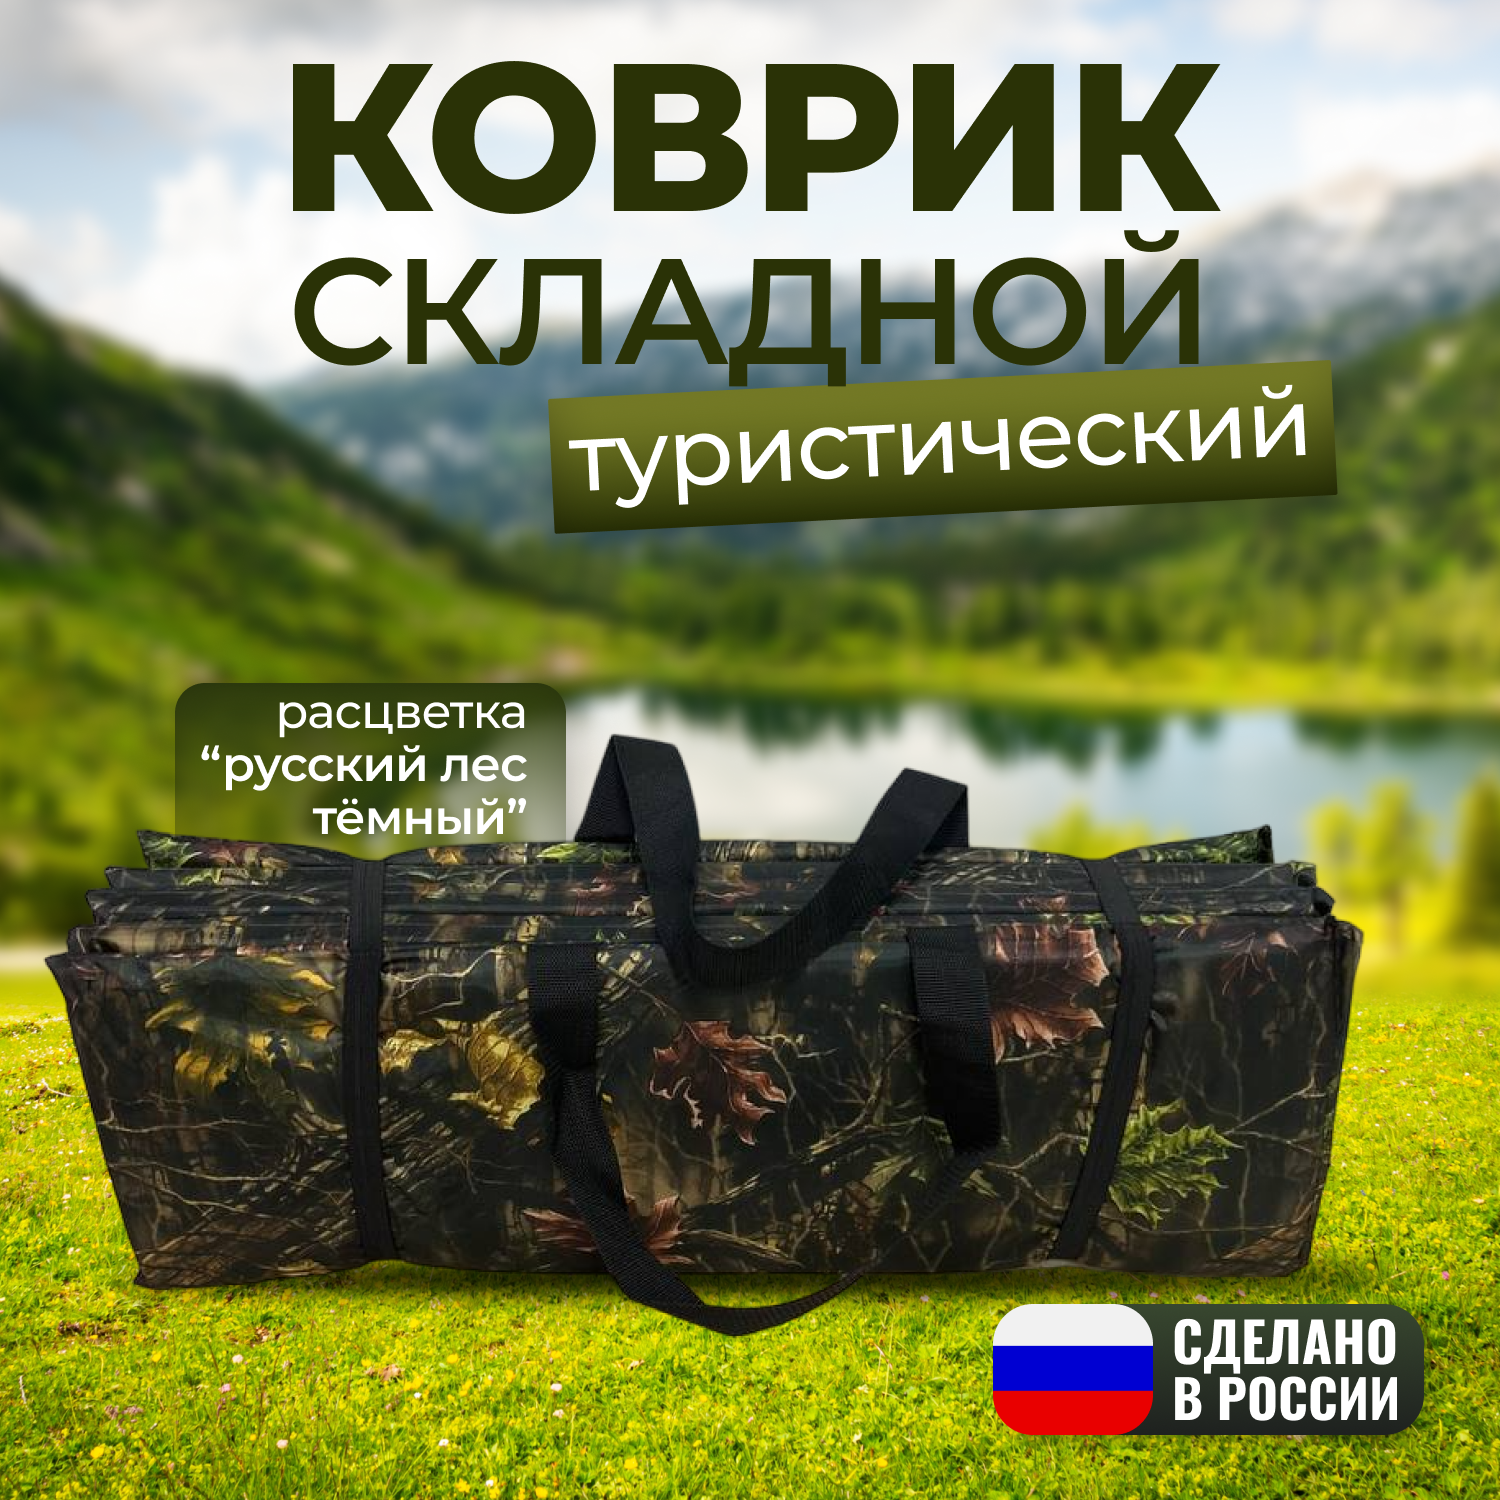 Складной туристический коврик "Русский лес темный" 195х70х1,8